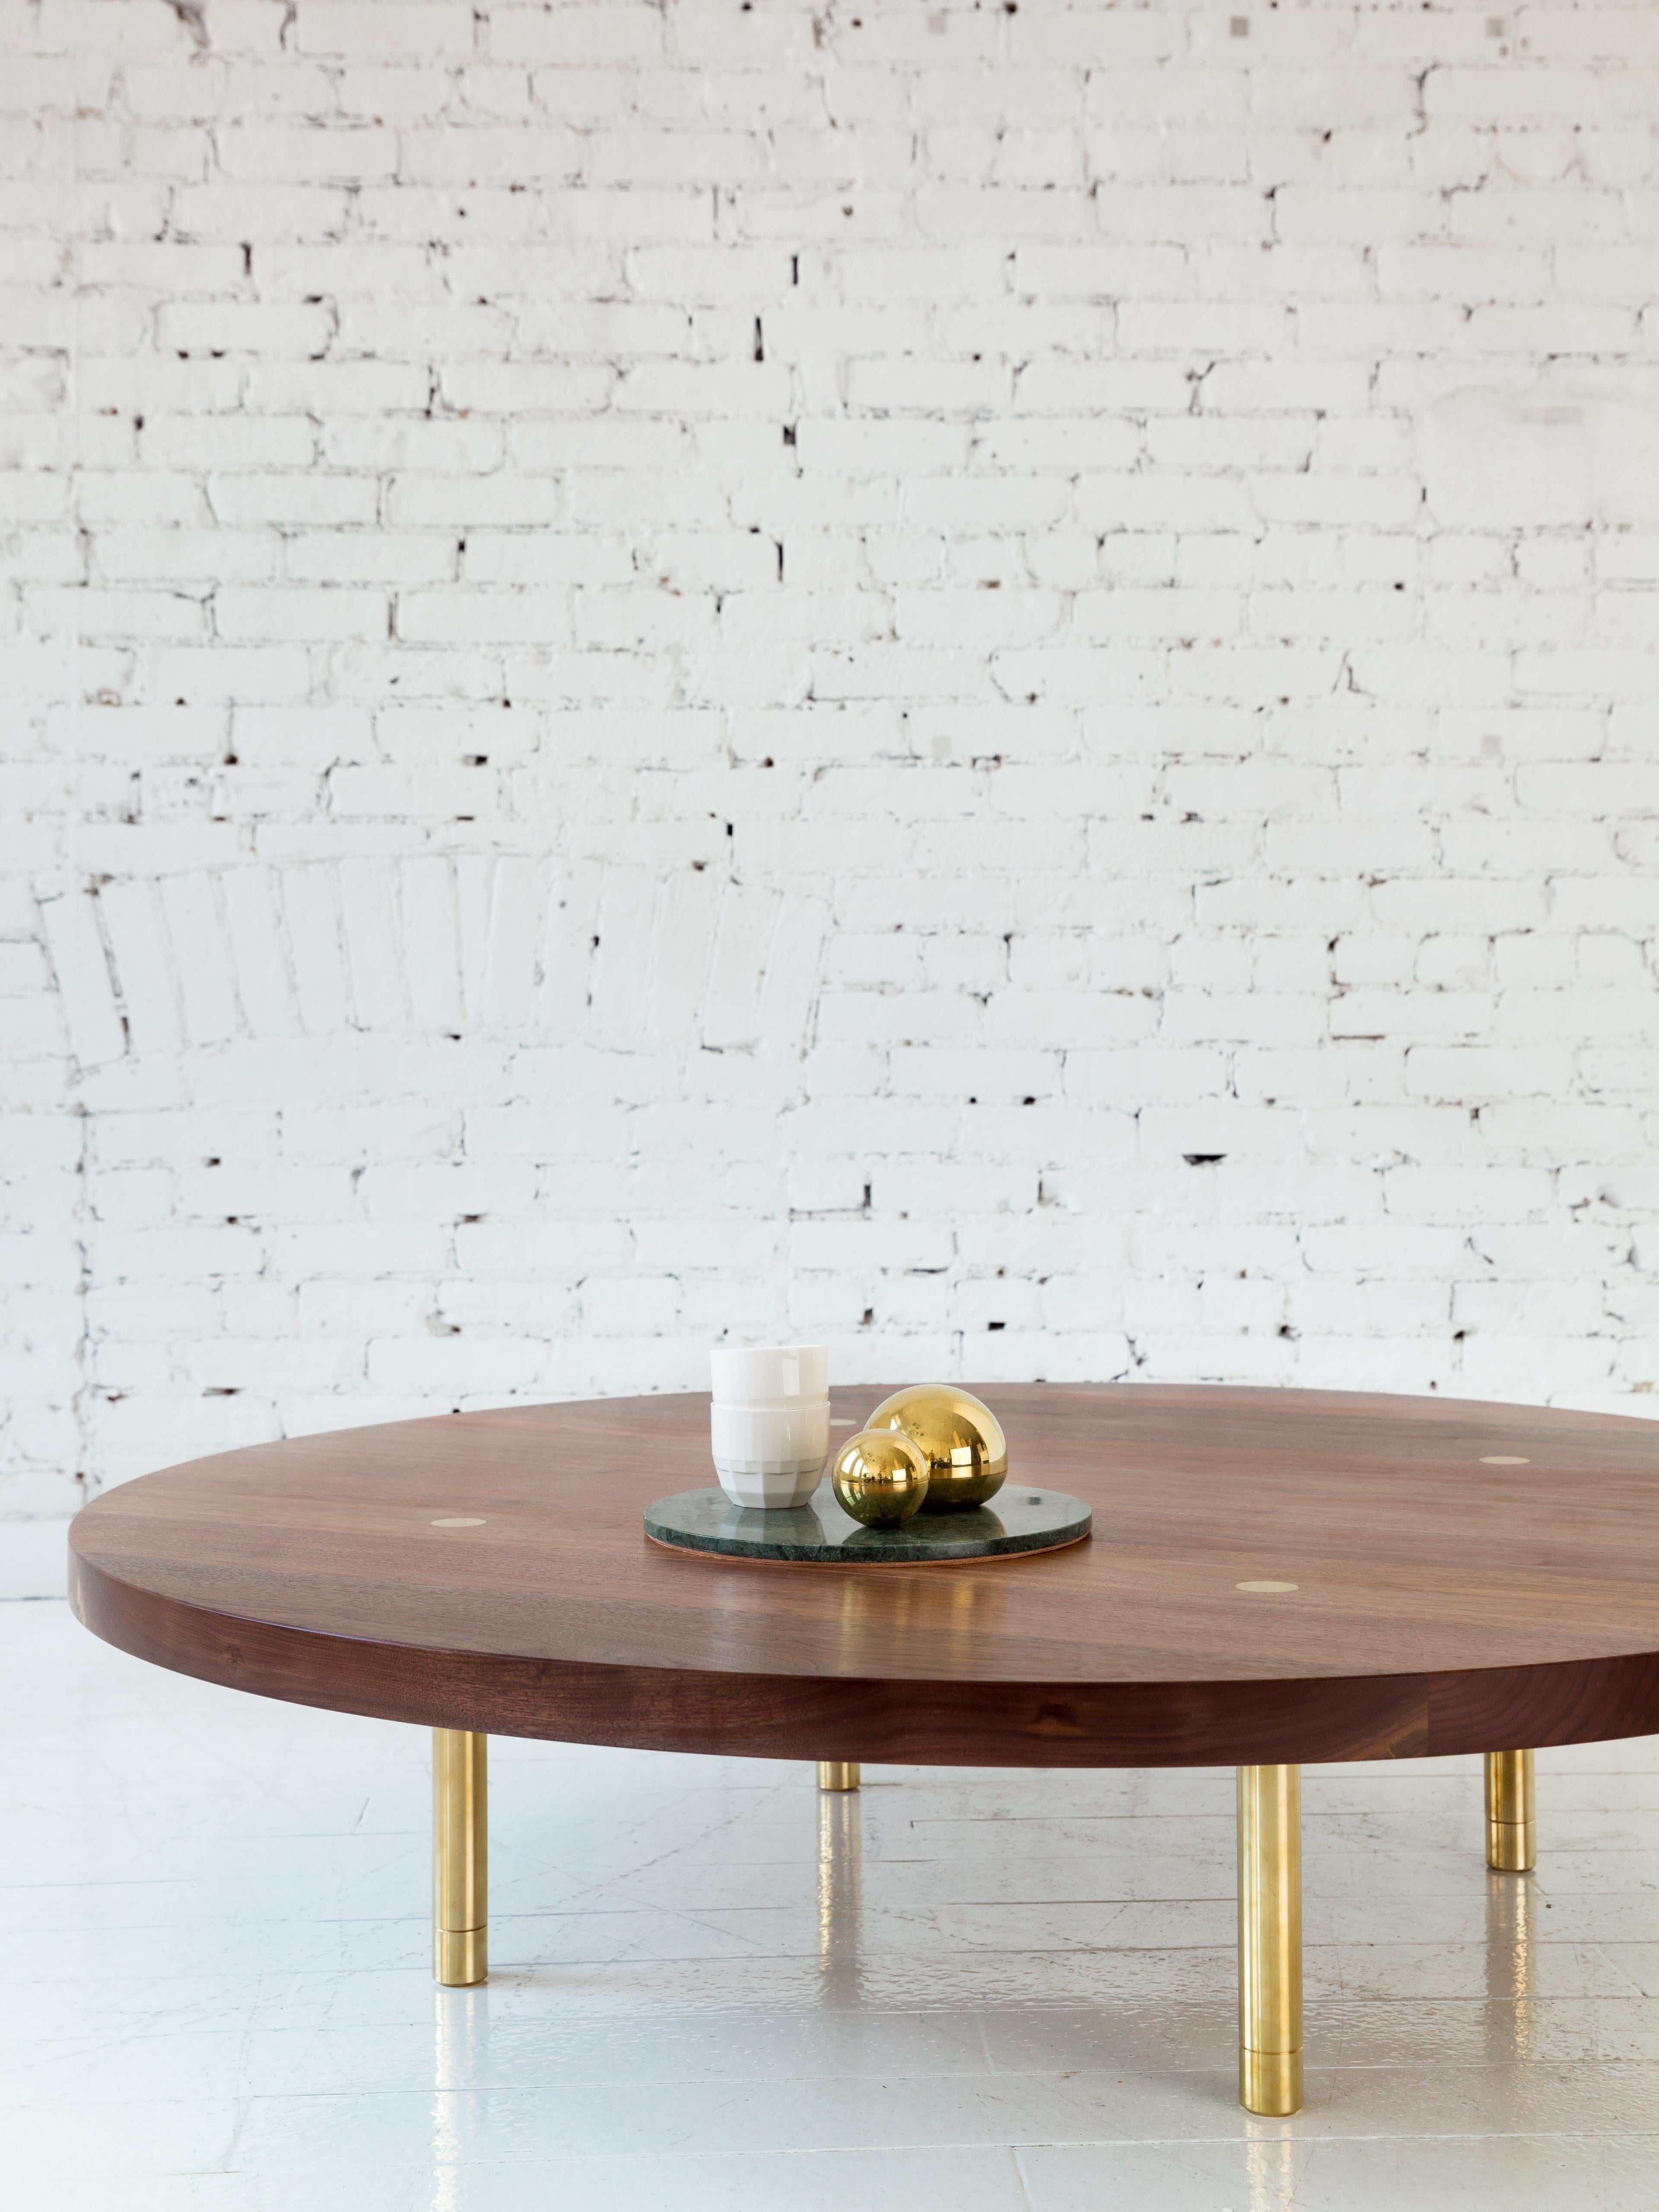 Cette table basse en bois, contemporaine et minimale, présente un plateau en bois dur et des pieds en laiton massif avec notre détail de tenon signature et des pieds de nivellement usinés avec précision.

Montré ici avec un plateau circulaire en